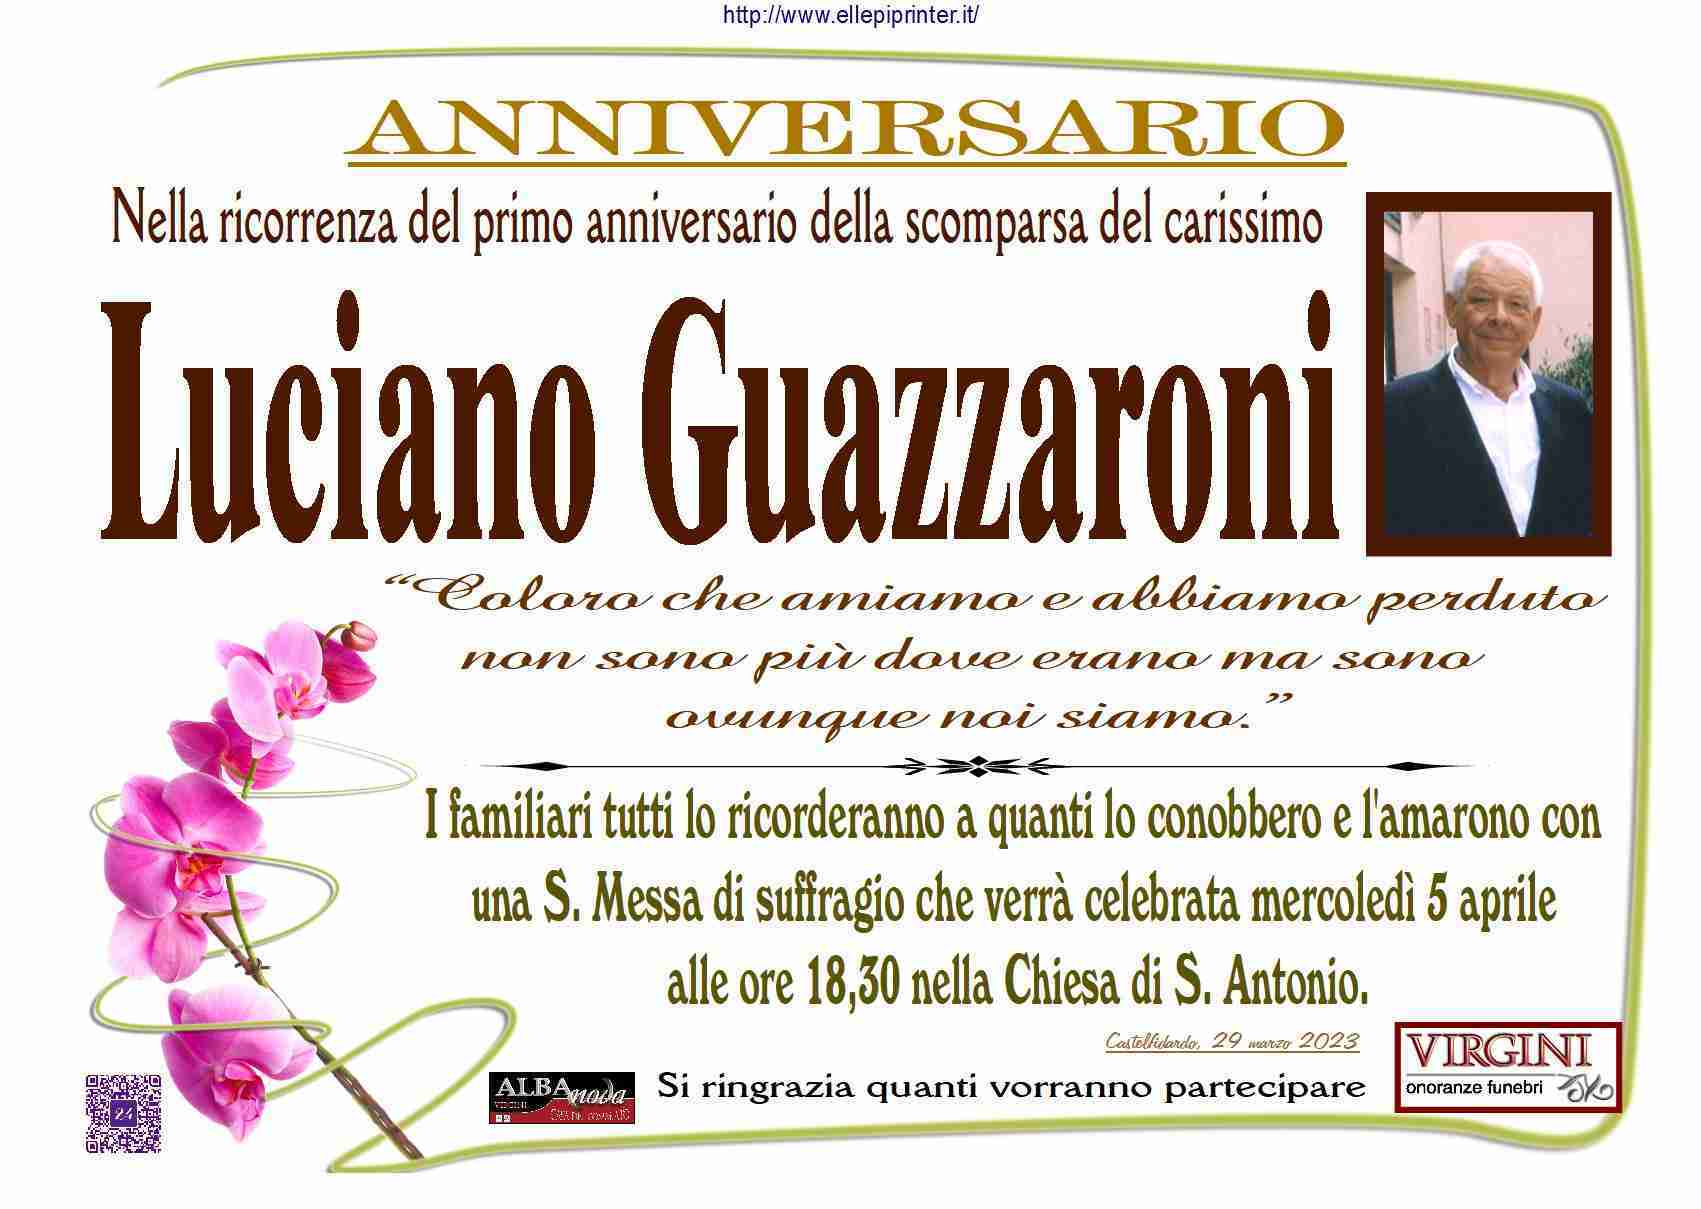 Luciano Guazzaroni